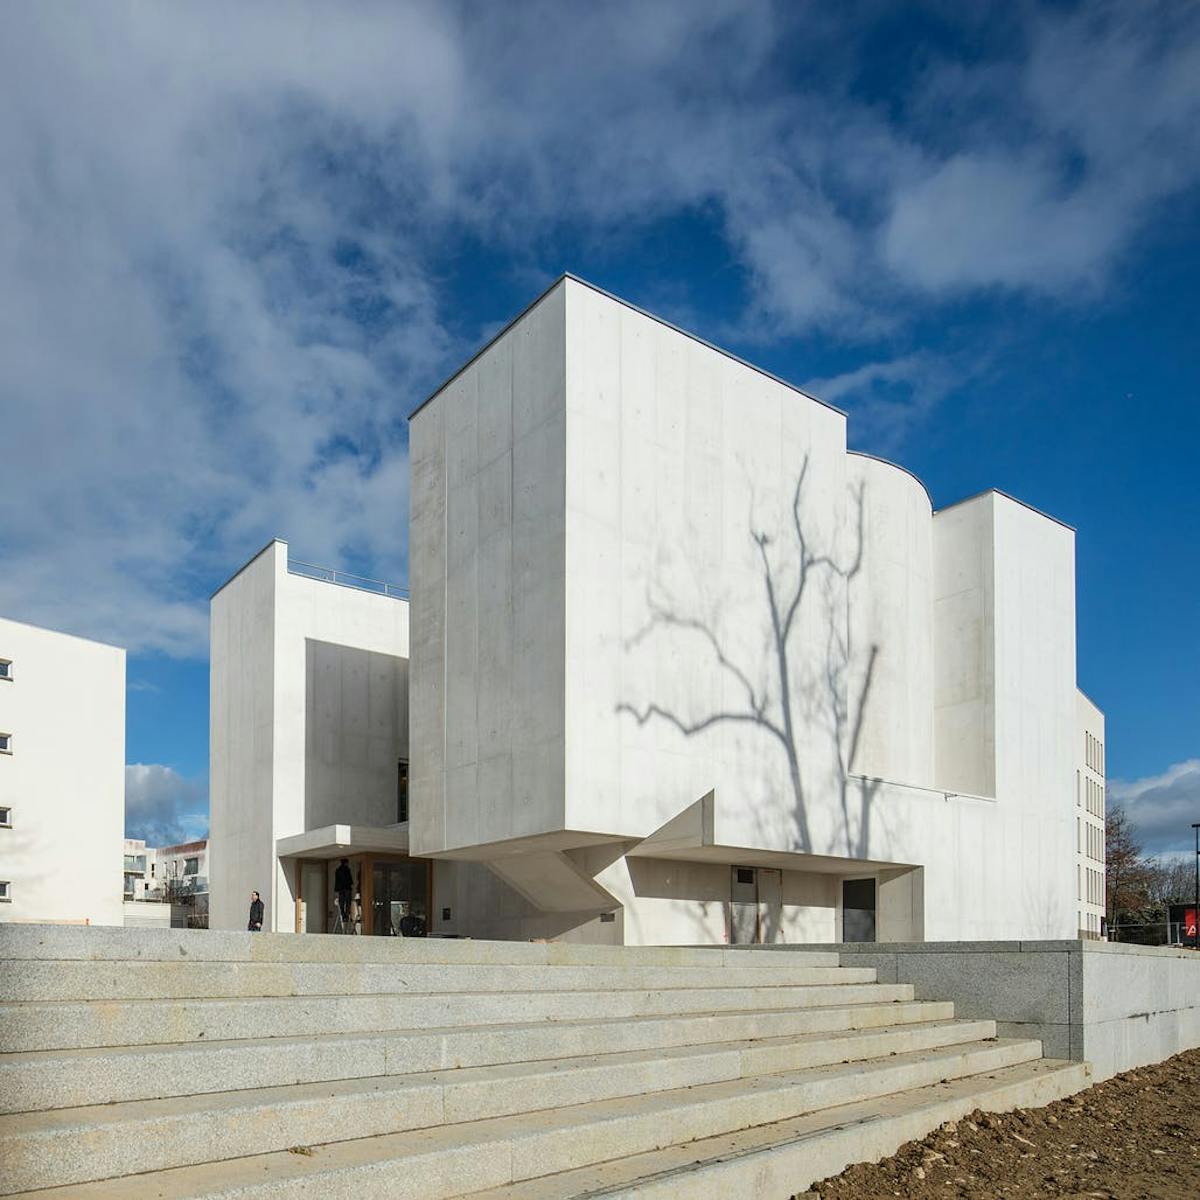 Portuguese architect Álvaro Siza Vieira realizes white concrete church